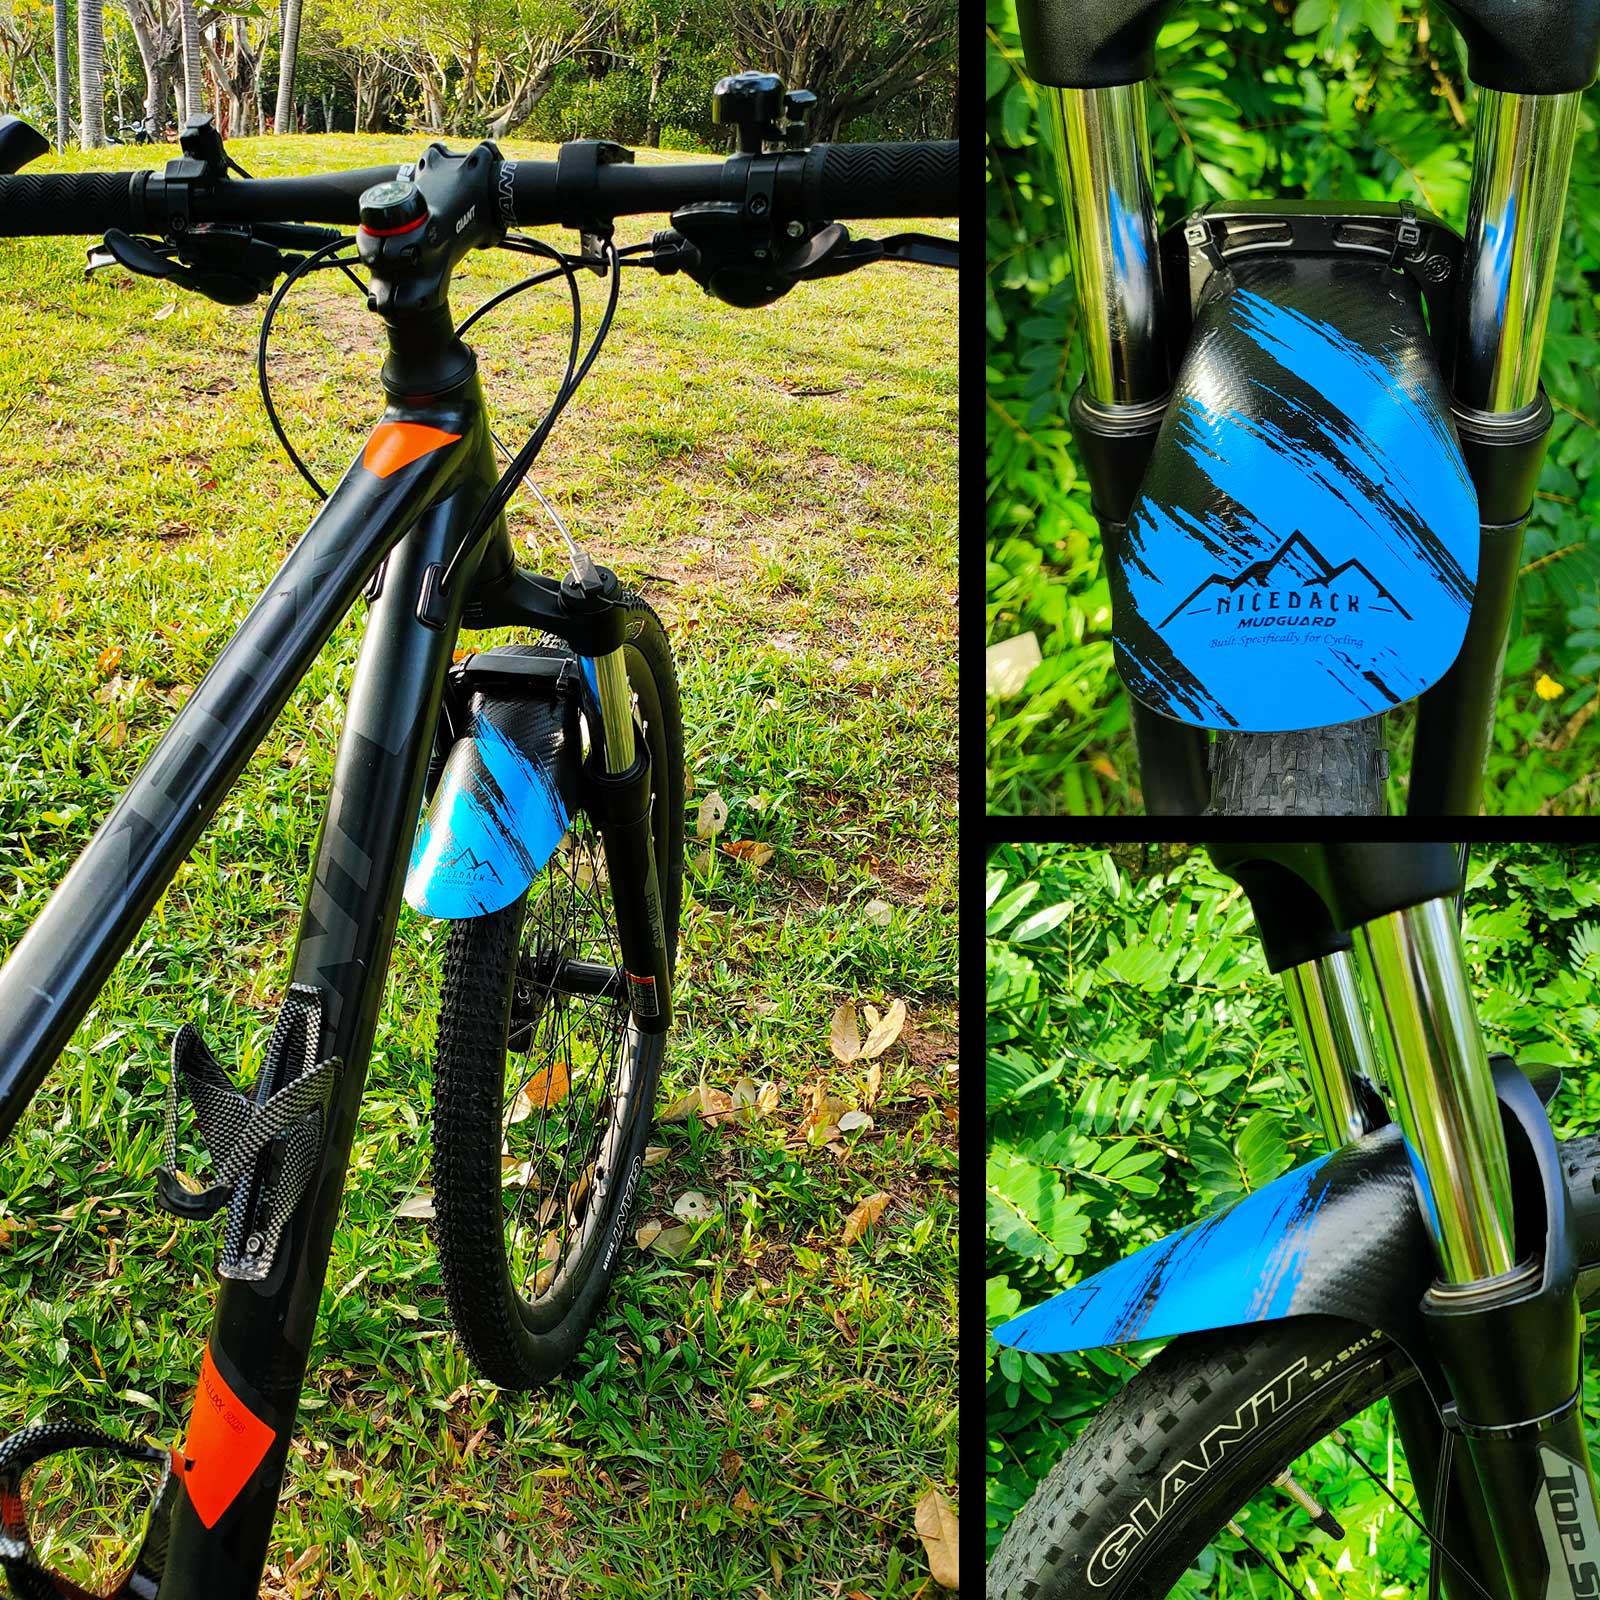 NICEDACK Fietsspatbord een verscheidenheid aan patronen optionele collocatie van fiets voorspatbord coole fietsaccessoires: